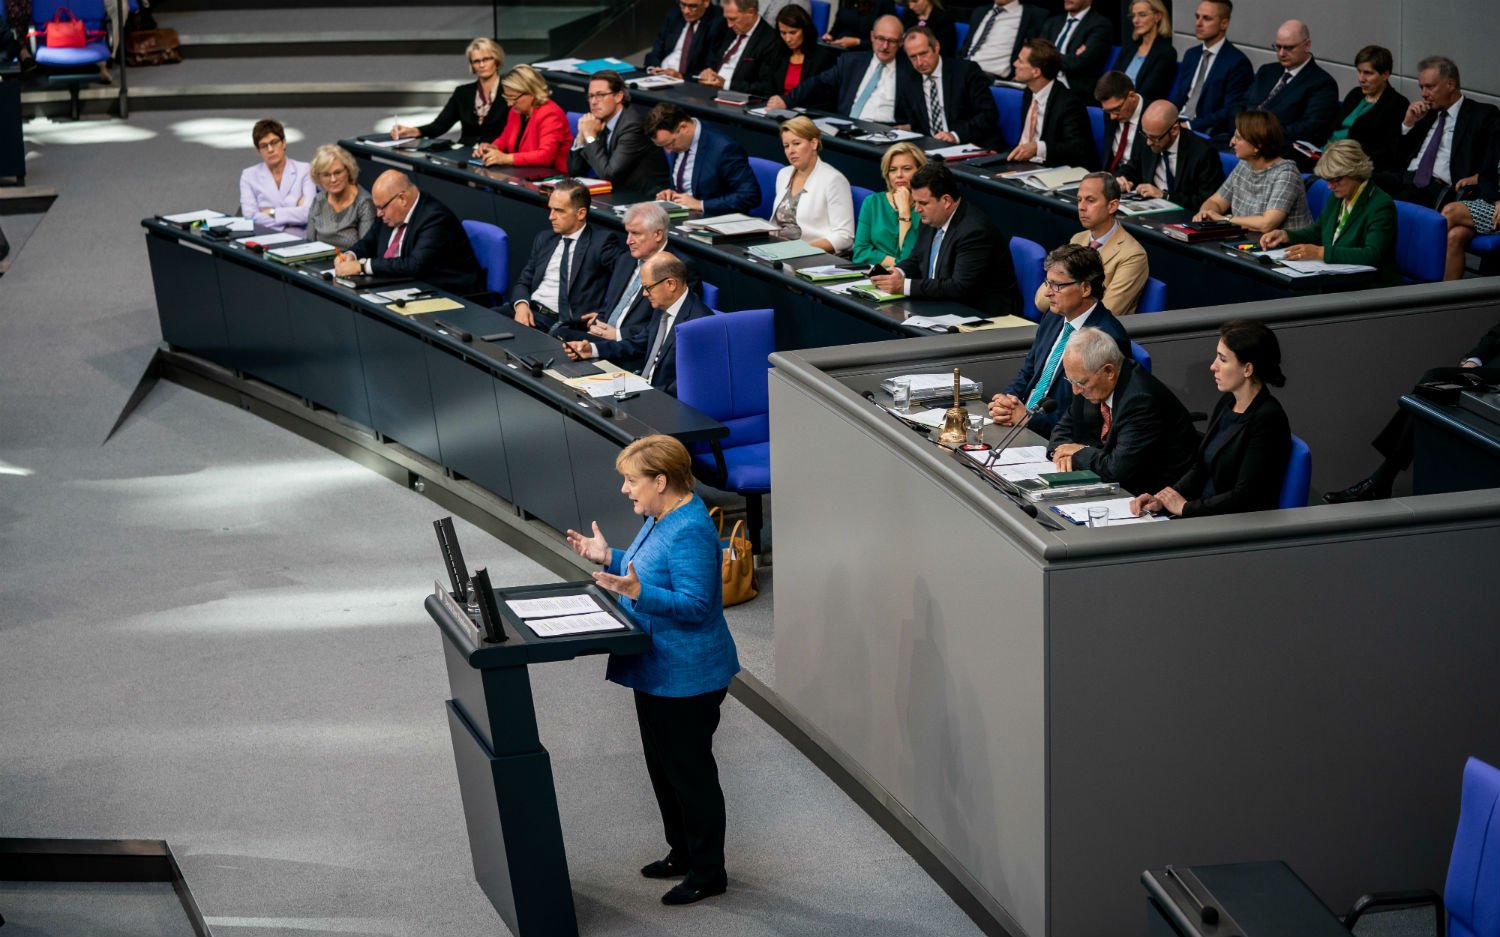 Angela Merkel del nga vetja: Sulmon ashpër kandidatin që pritet t’i zë pozitën e kancelares